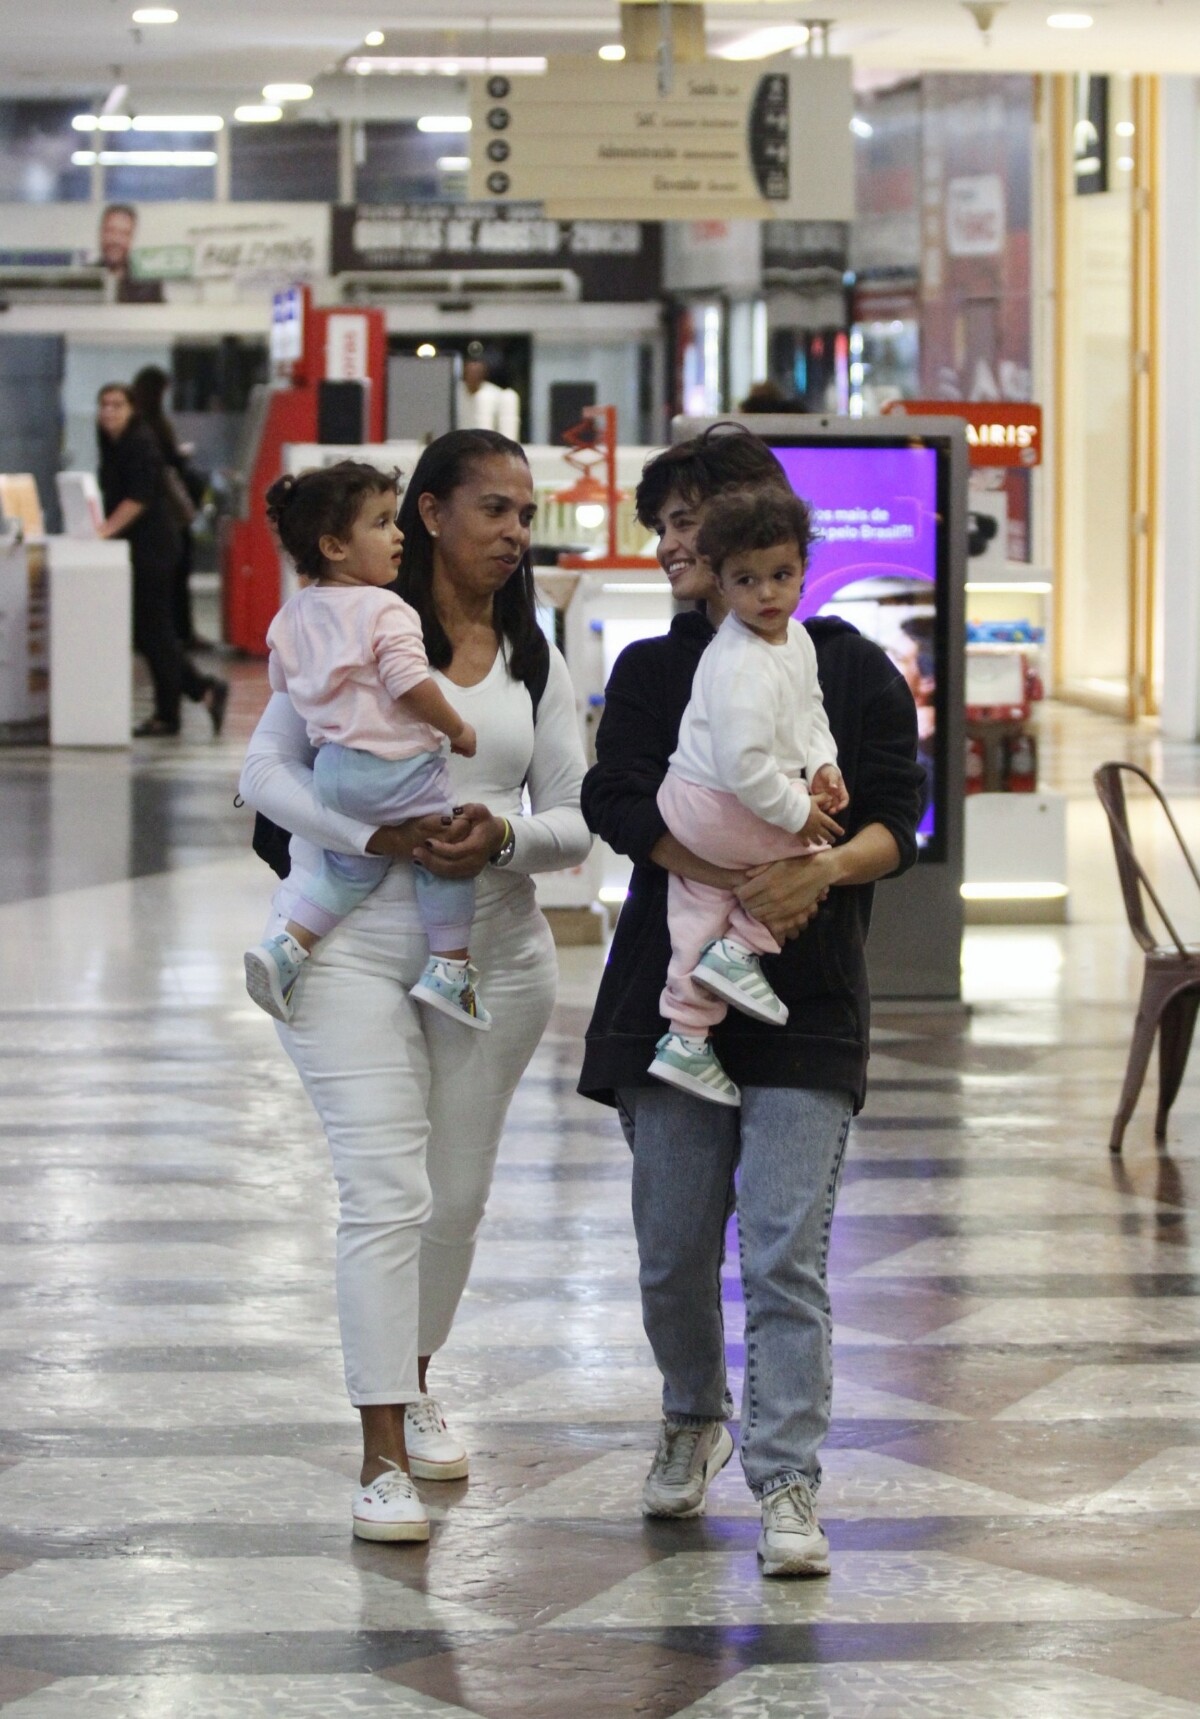 Foto Nanda Costa levou Kim e Tiê para passear enquanto estava acompanhada de uma babá Purepeople